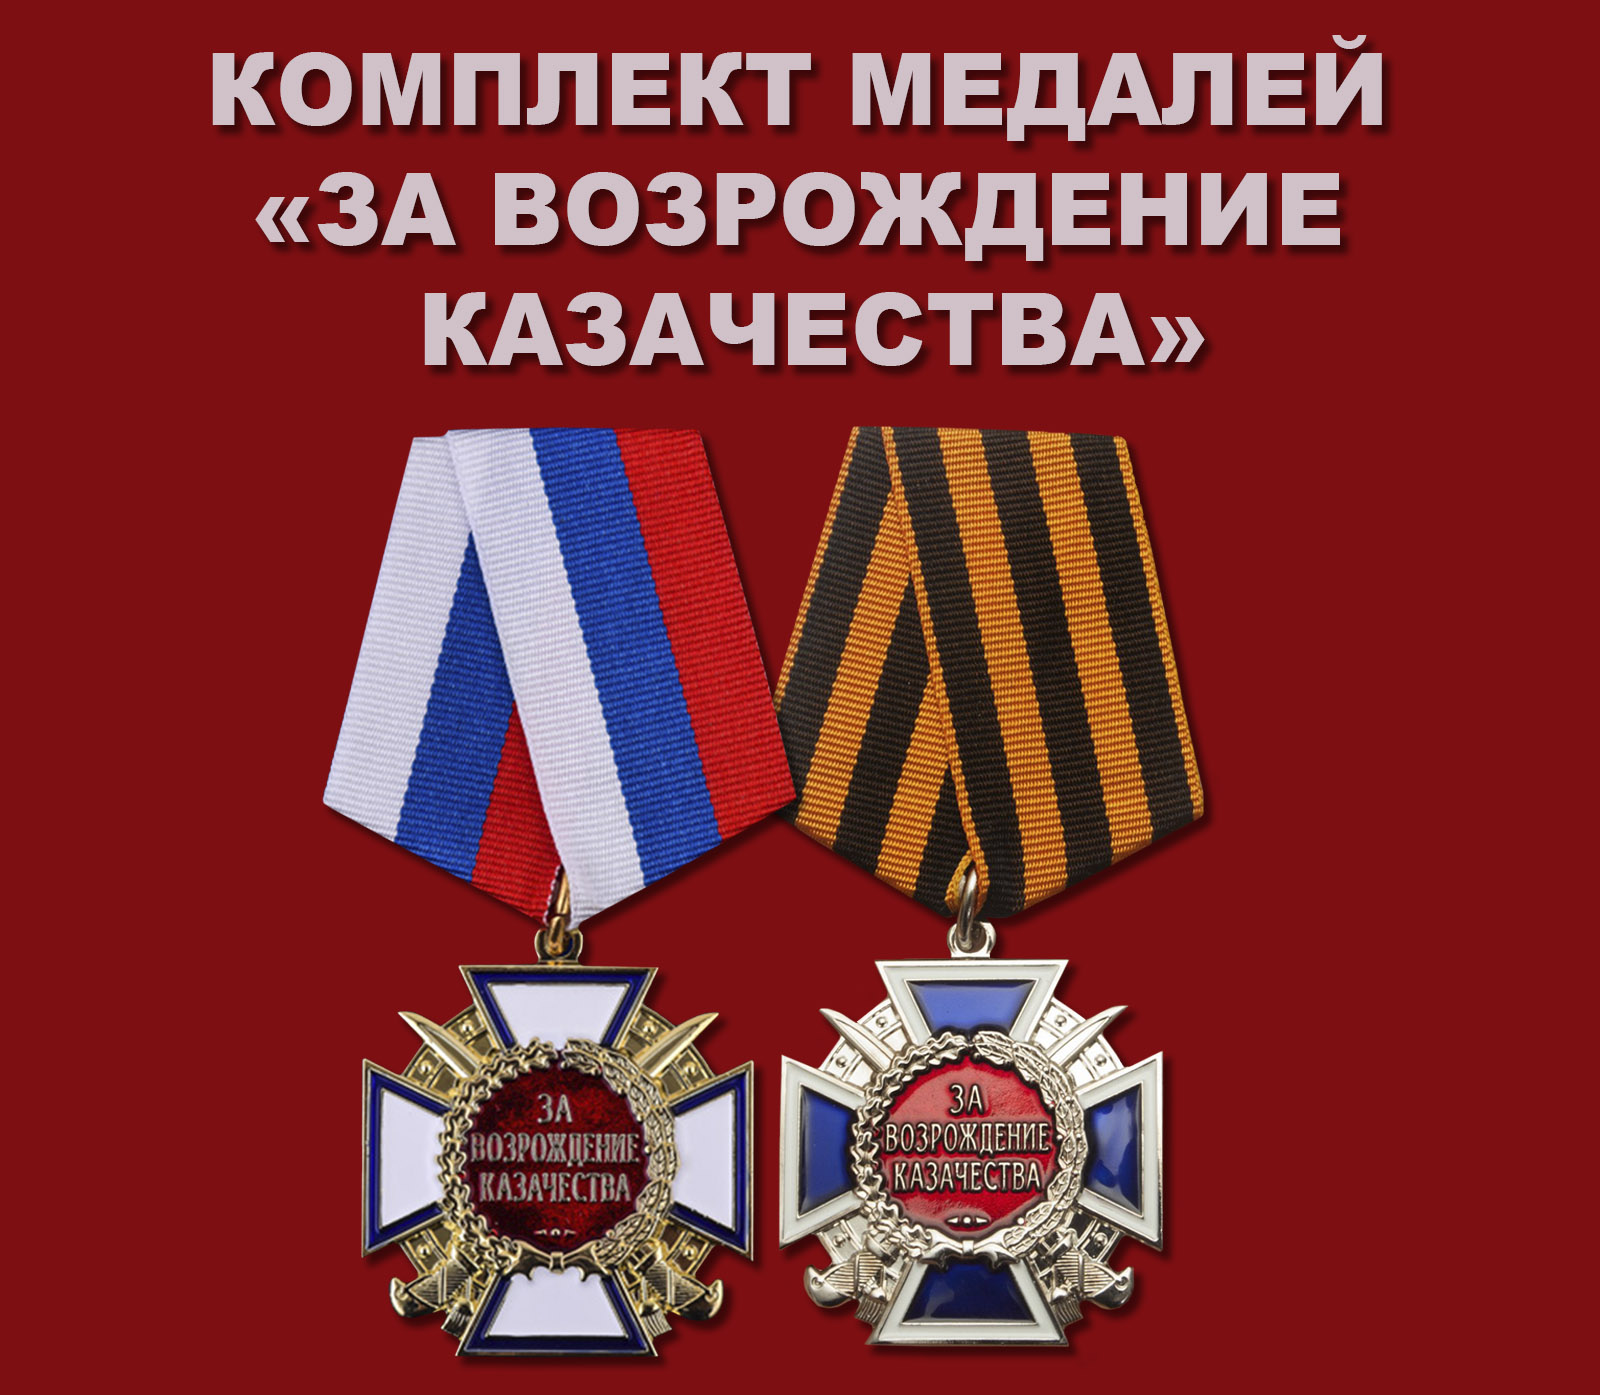 Купить комплект медалей "За возрождение казачества"